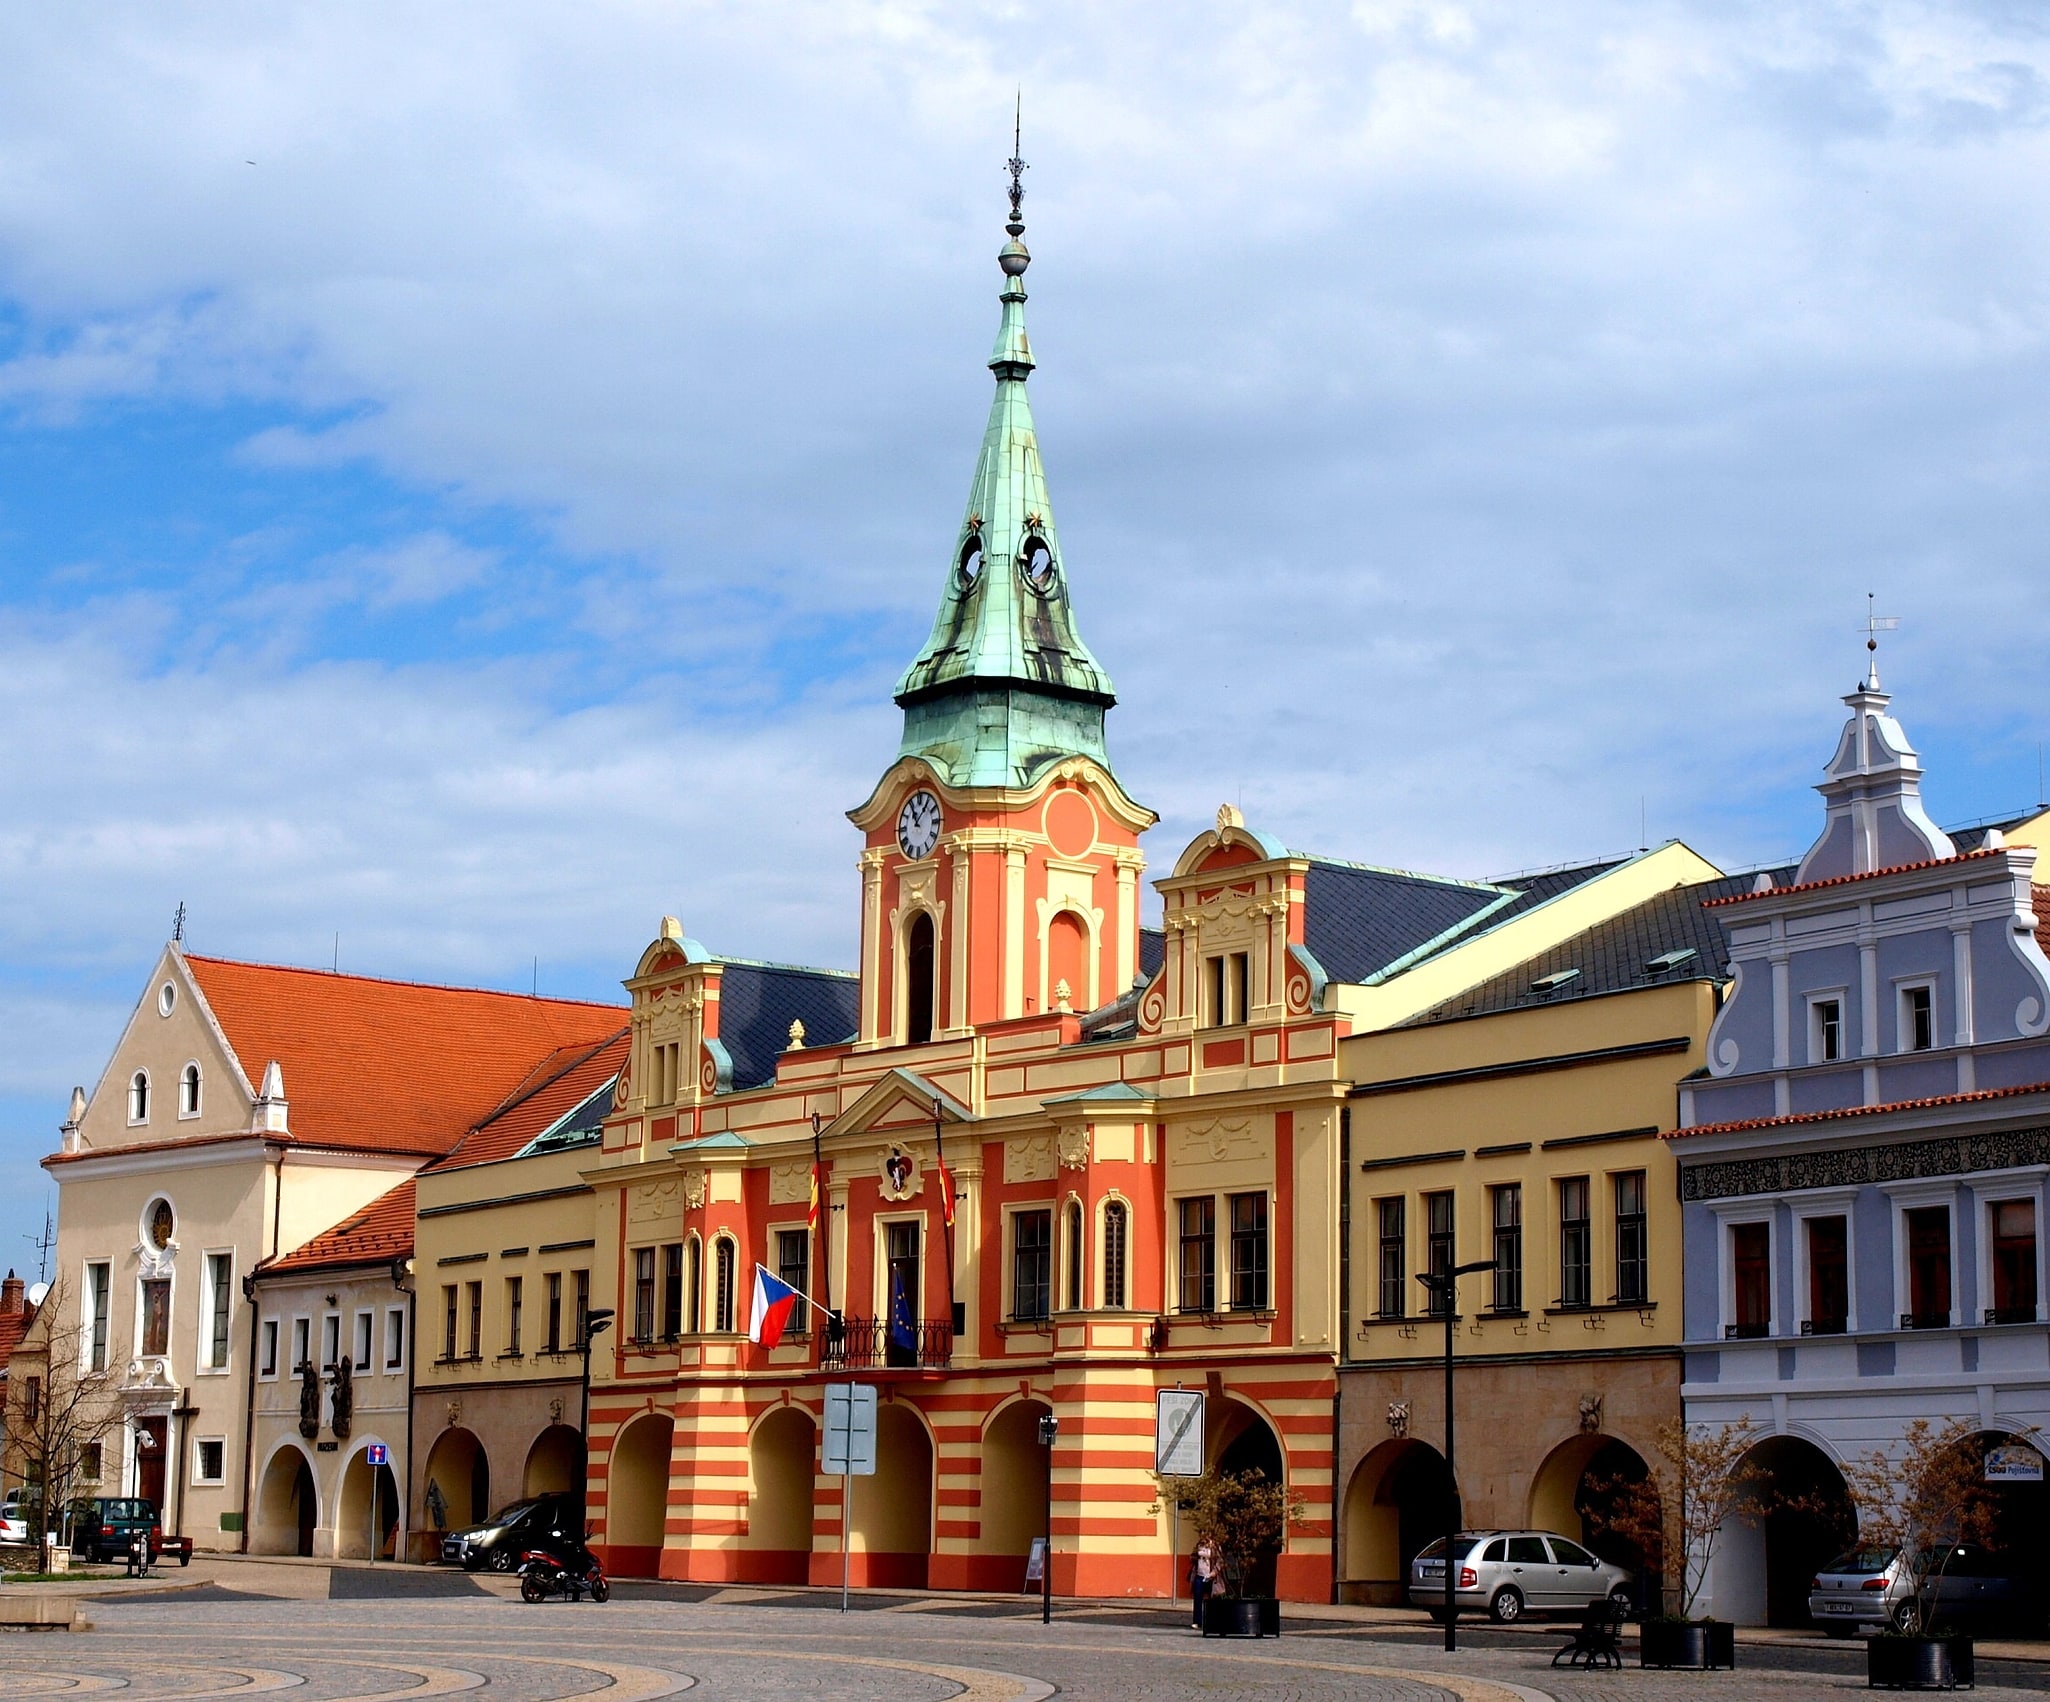 Mělník, Czech Republic